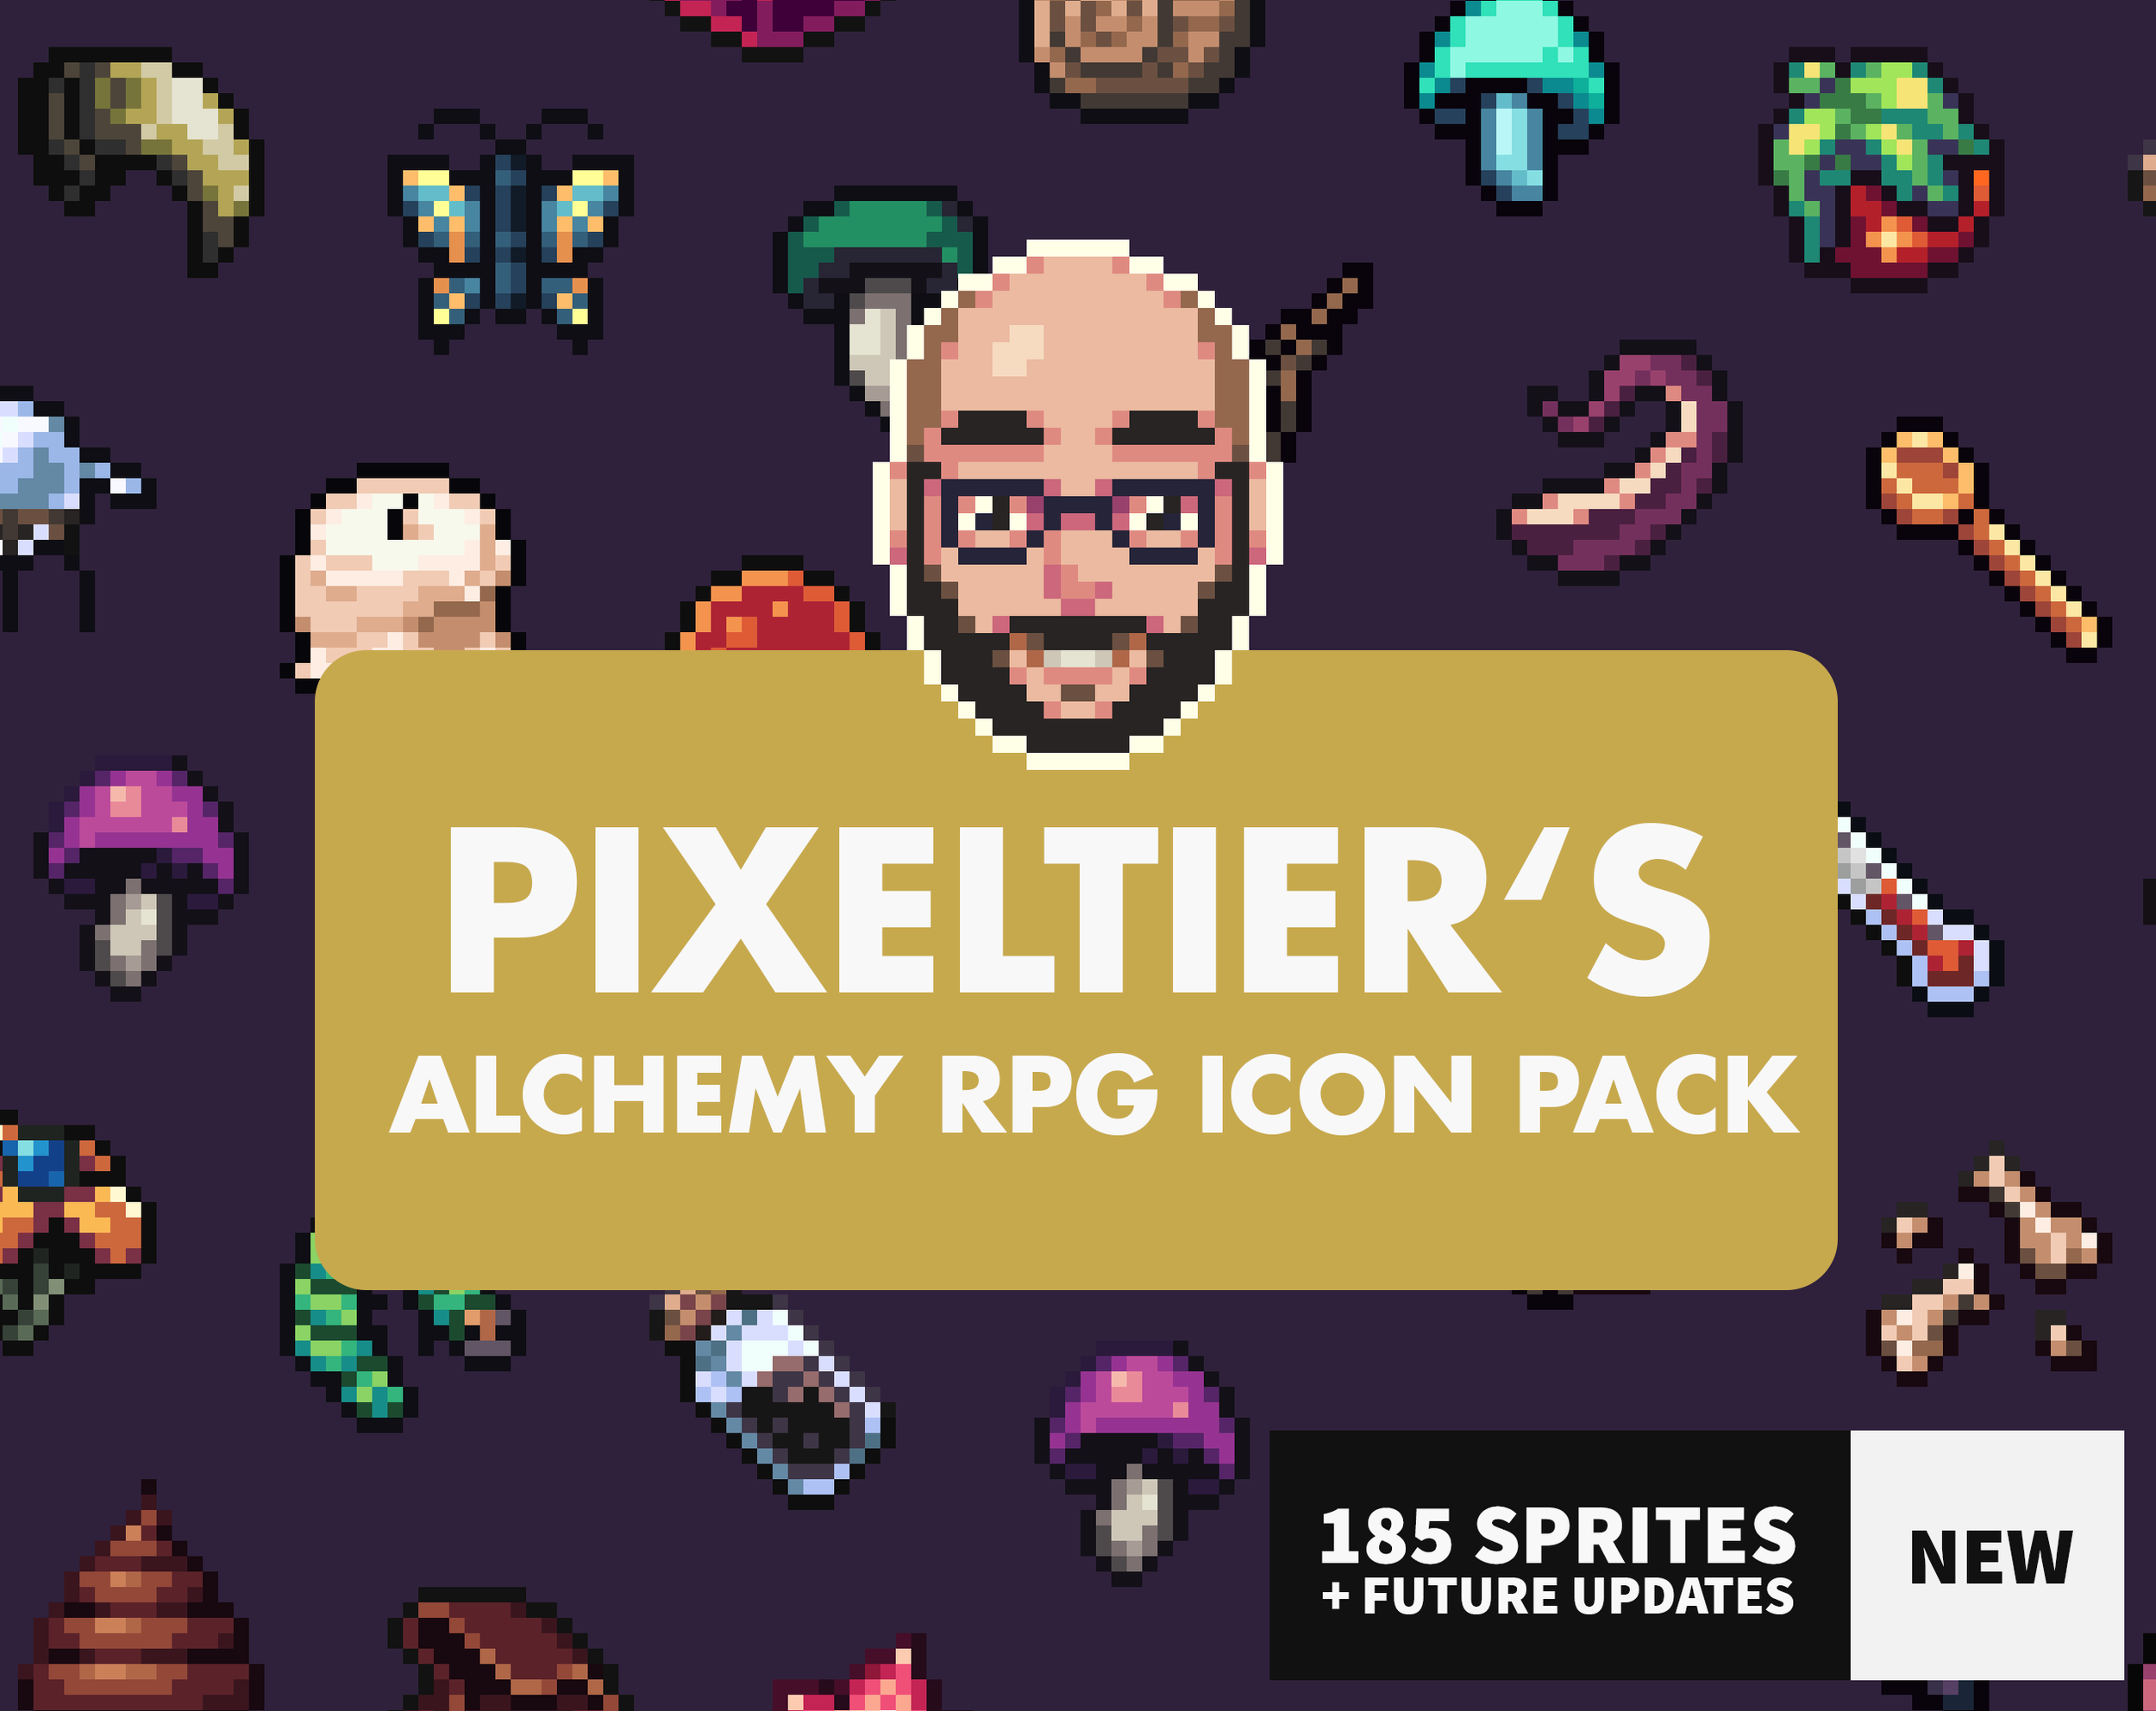 Pixeltier's Alchemy RPG Icon Pack